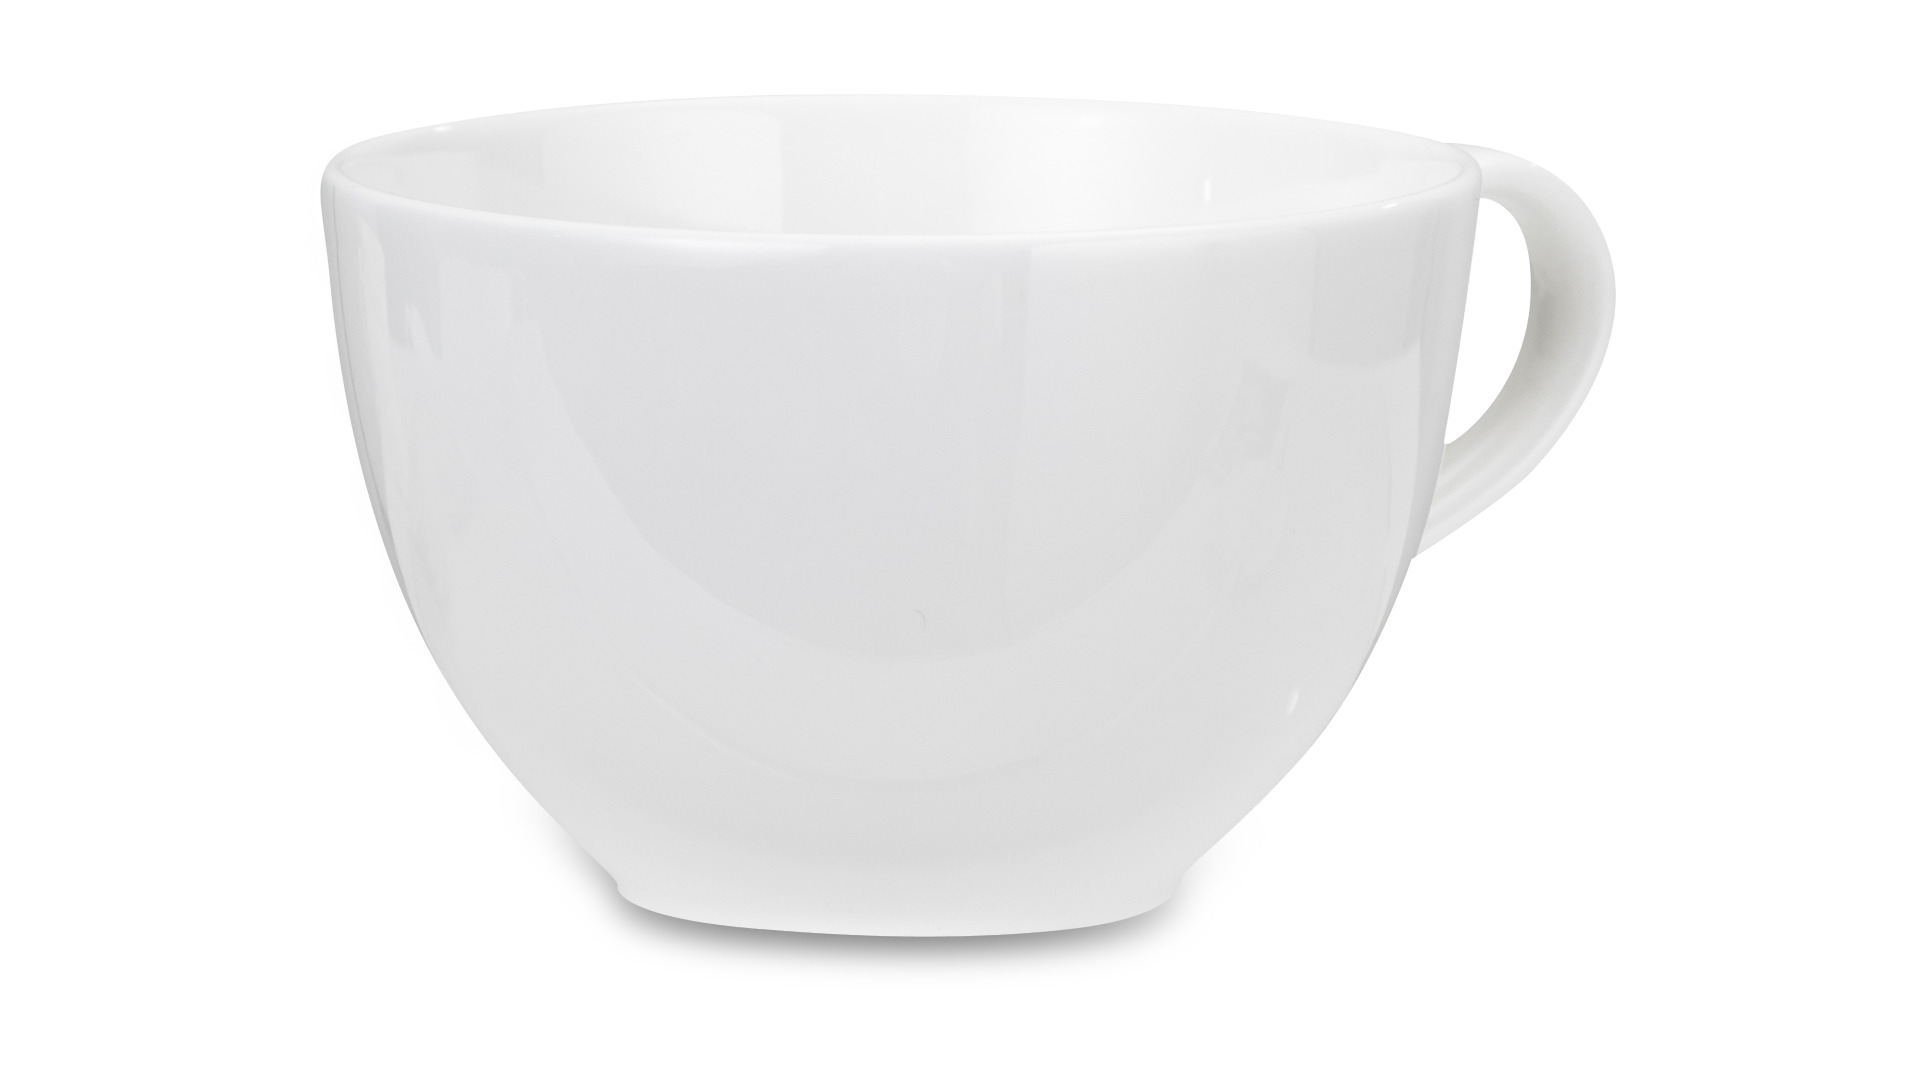 Чашка чайная с блюдцем Narumi Белый декор 280 мл, фарфор костяной